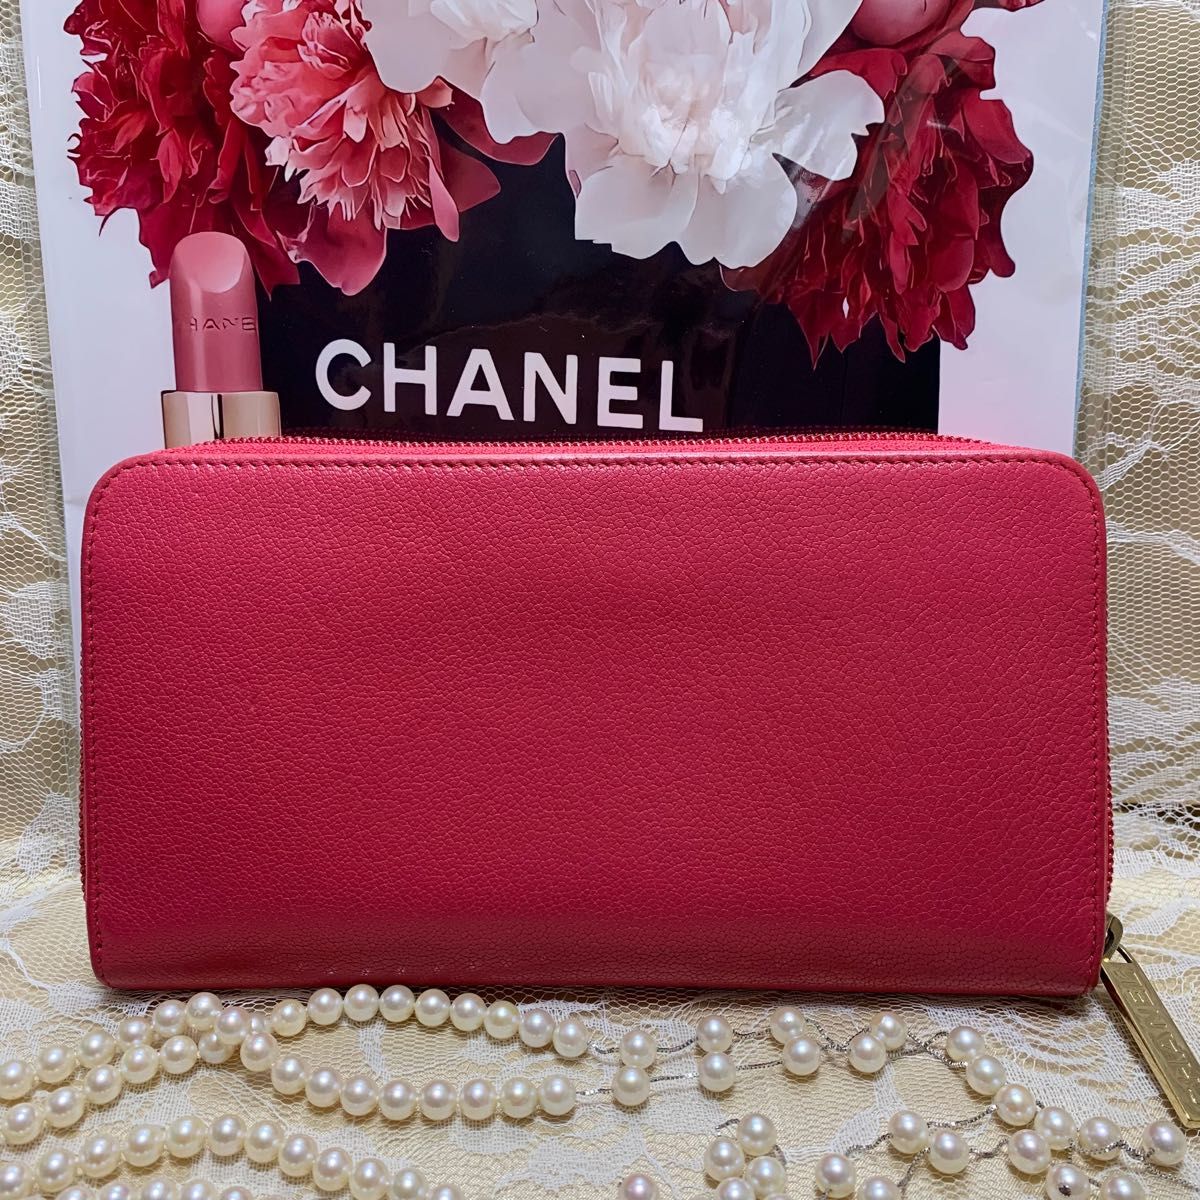 お値下げ中 極美品 鮮やかなピンク CHANEL シャネル 長財布 ココマーク